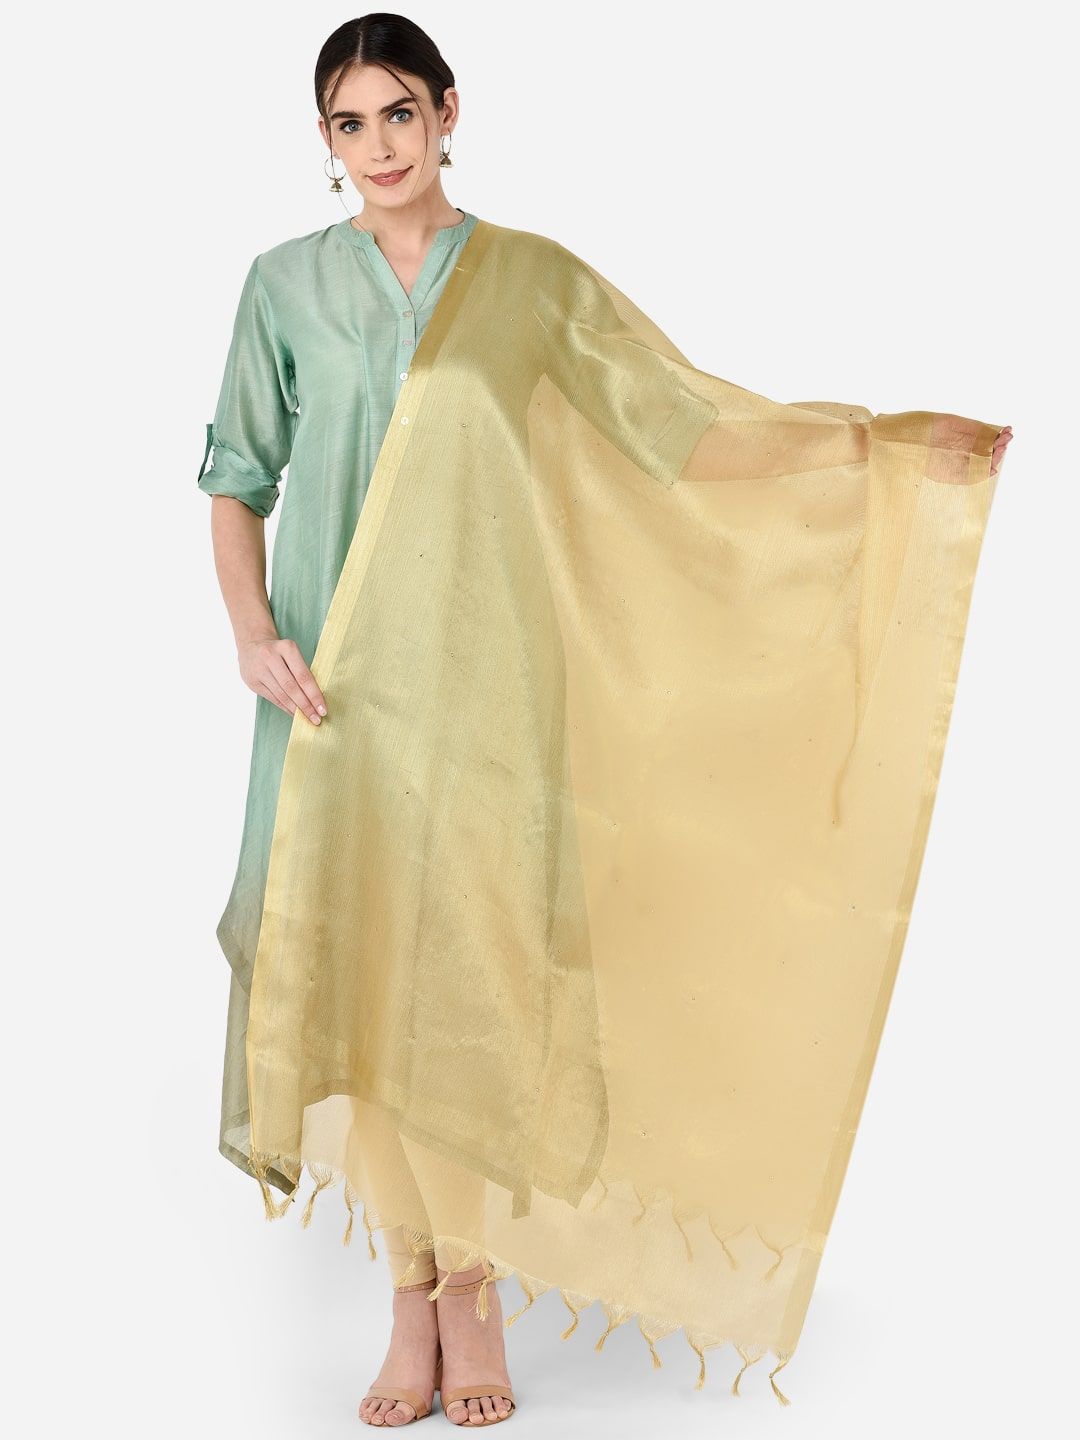 Dupatta Bazaar Gold-Toned Solid Tissue Silk Dupatta Price in India